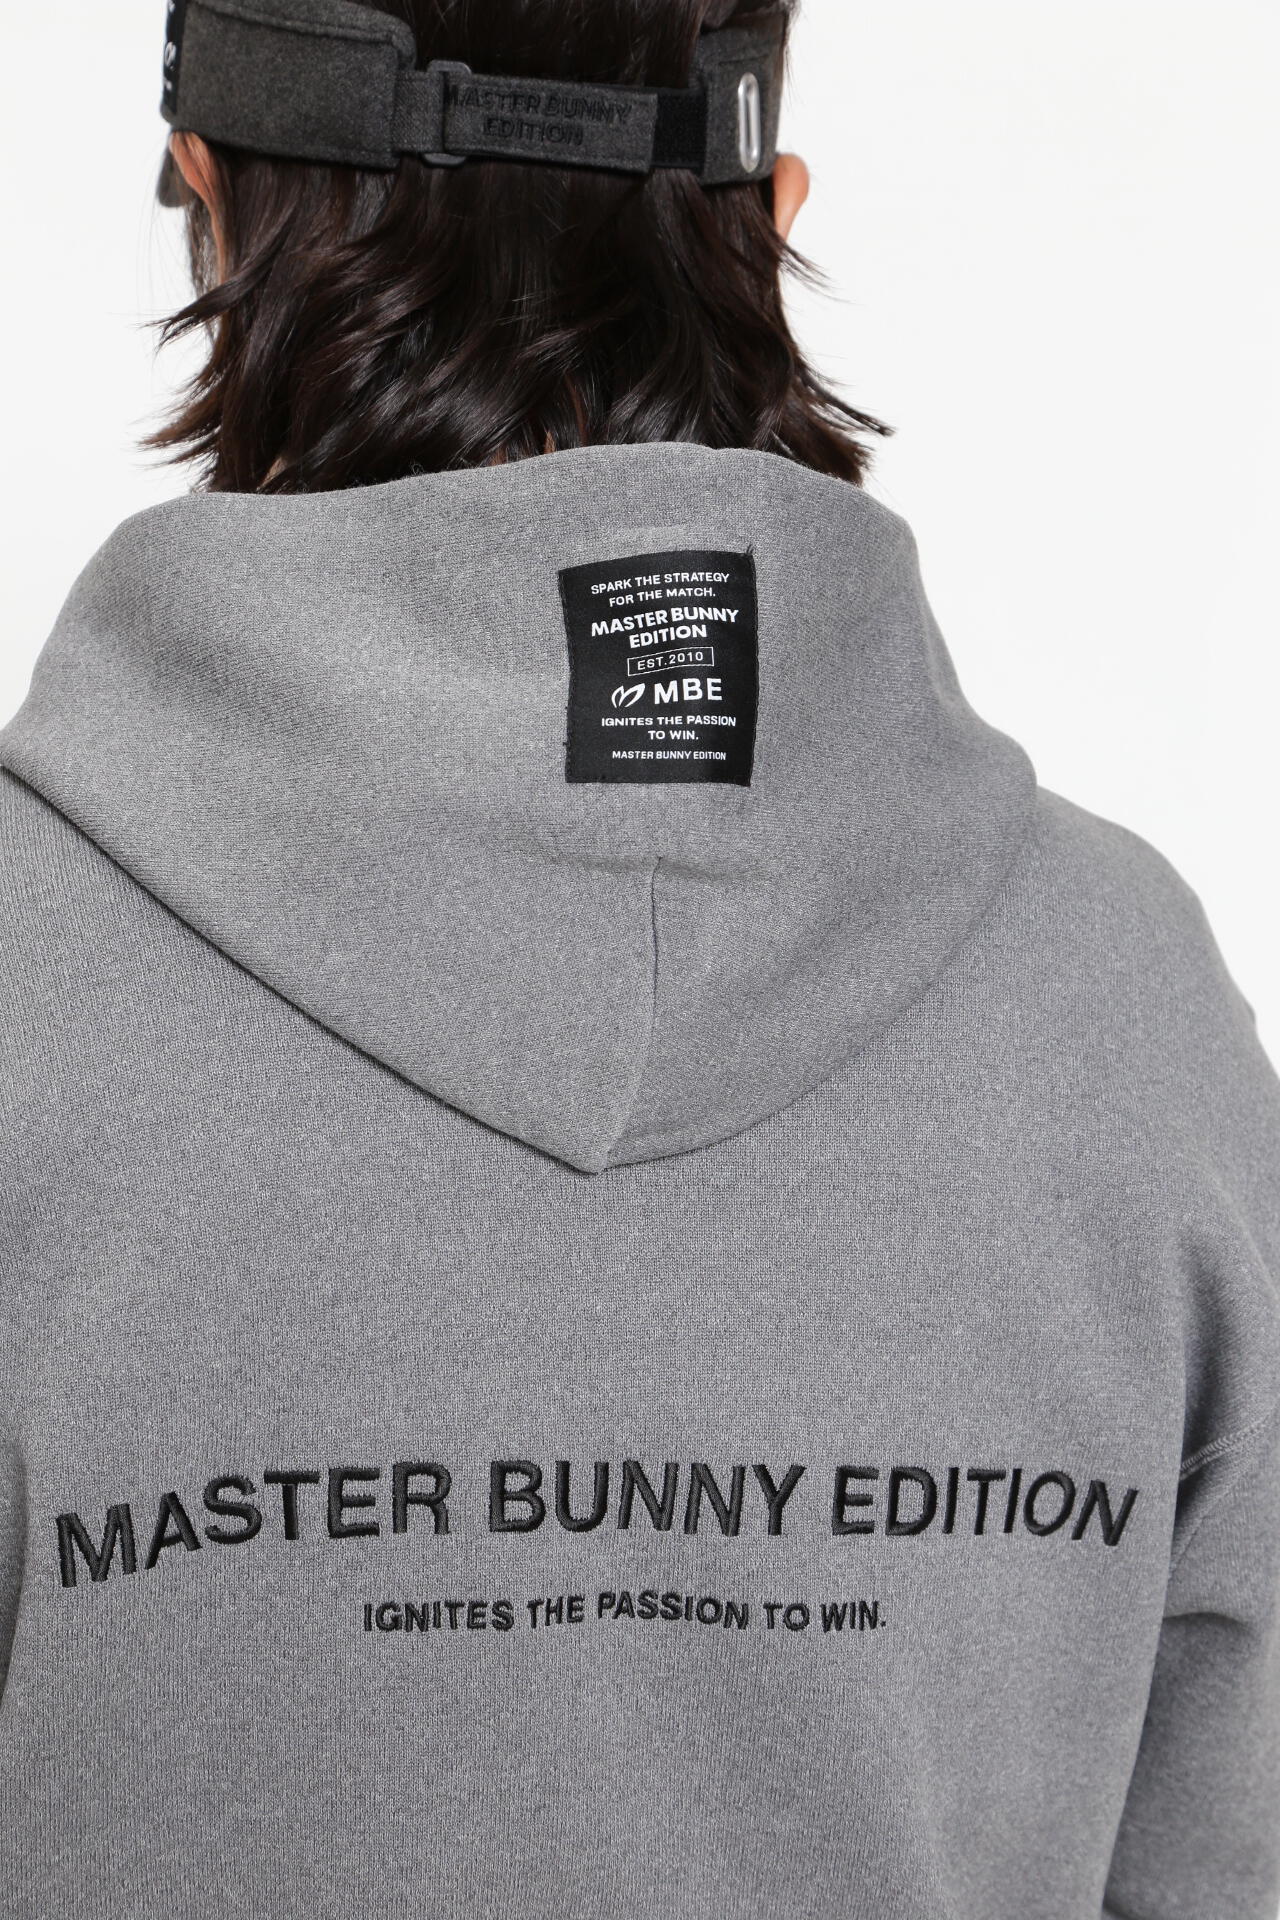 日本未発売】 マスターバニーエディション Edition Bunny ニットMaster 